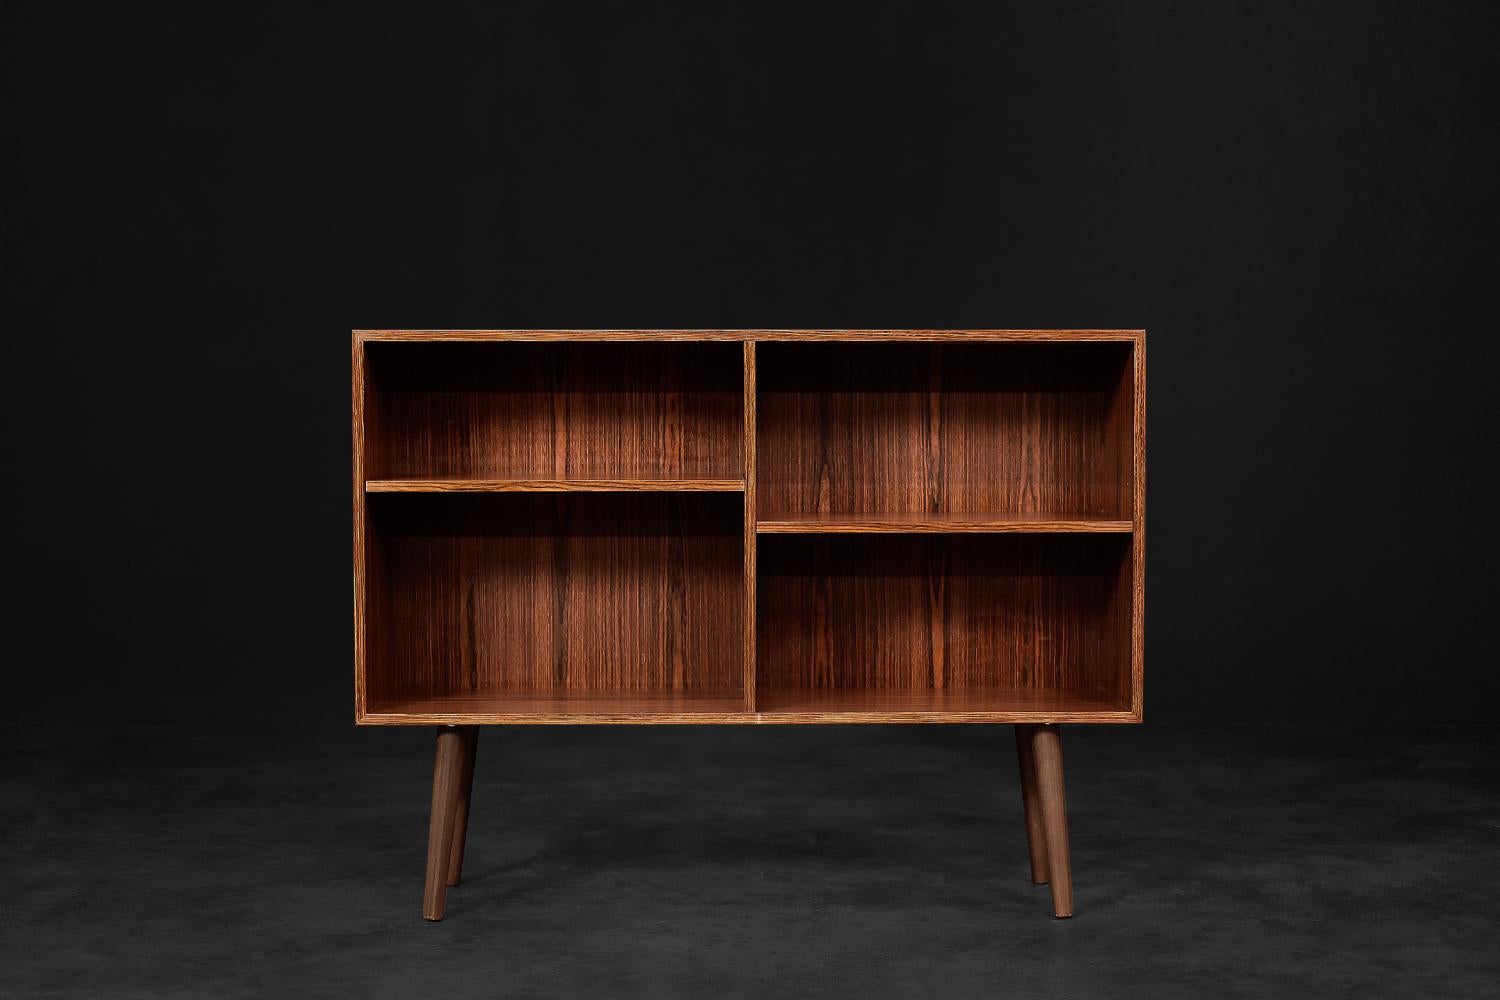 Ce meuble moderniste classique a été fabriqué au Danemark dans les années 1960. Fabriqué en bois de rose noble de haute qualité. Sa structure est très forte, avec un grainage expressif. Les meubles fabriqués dans ce bois ont un aspect très décoratif